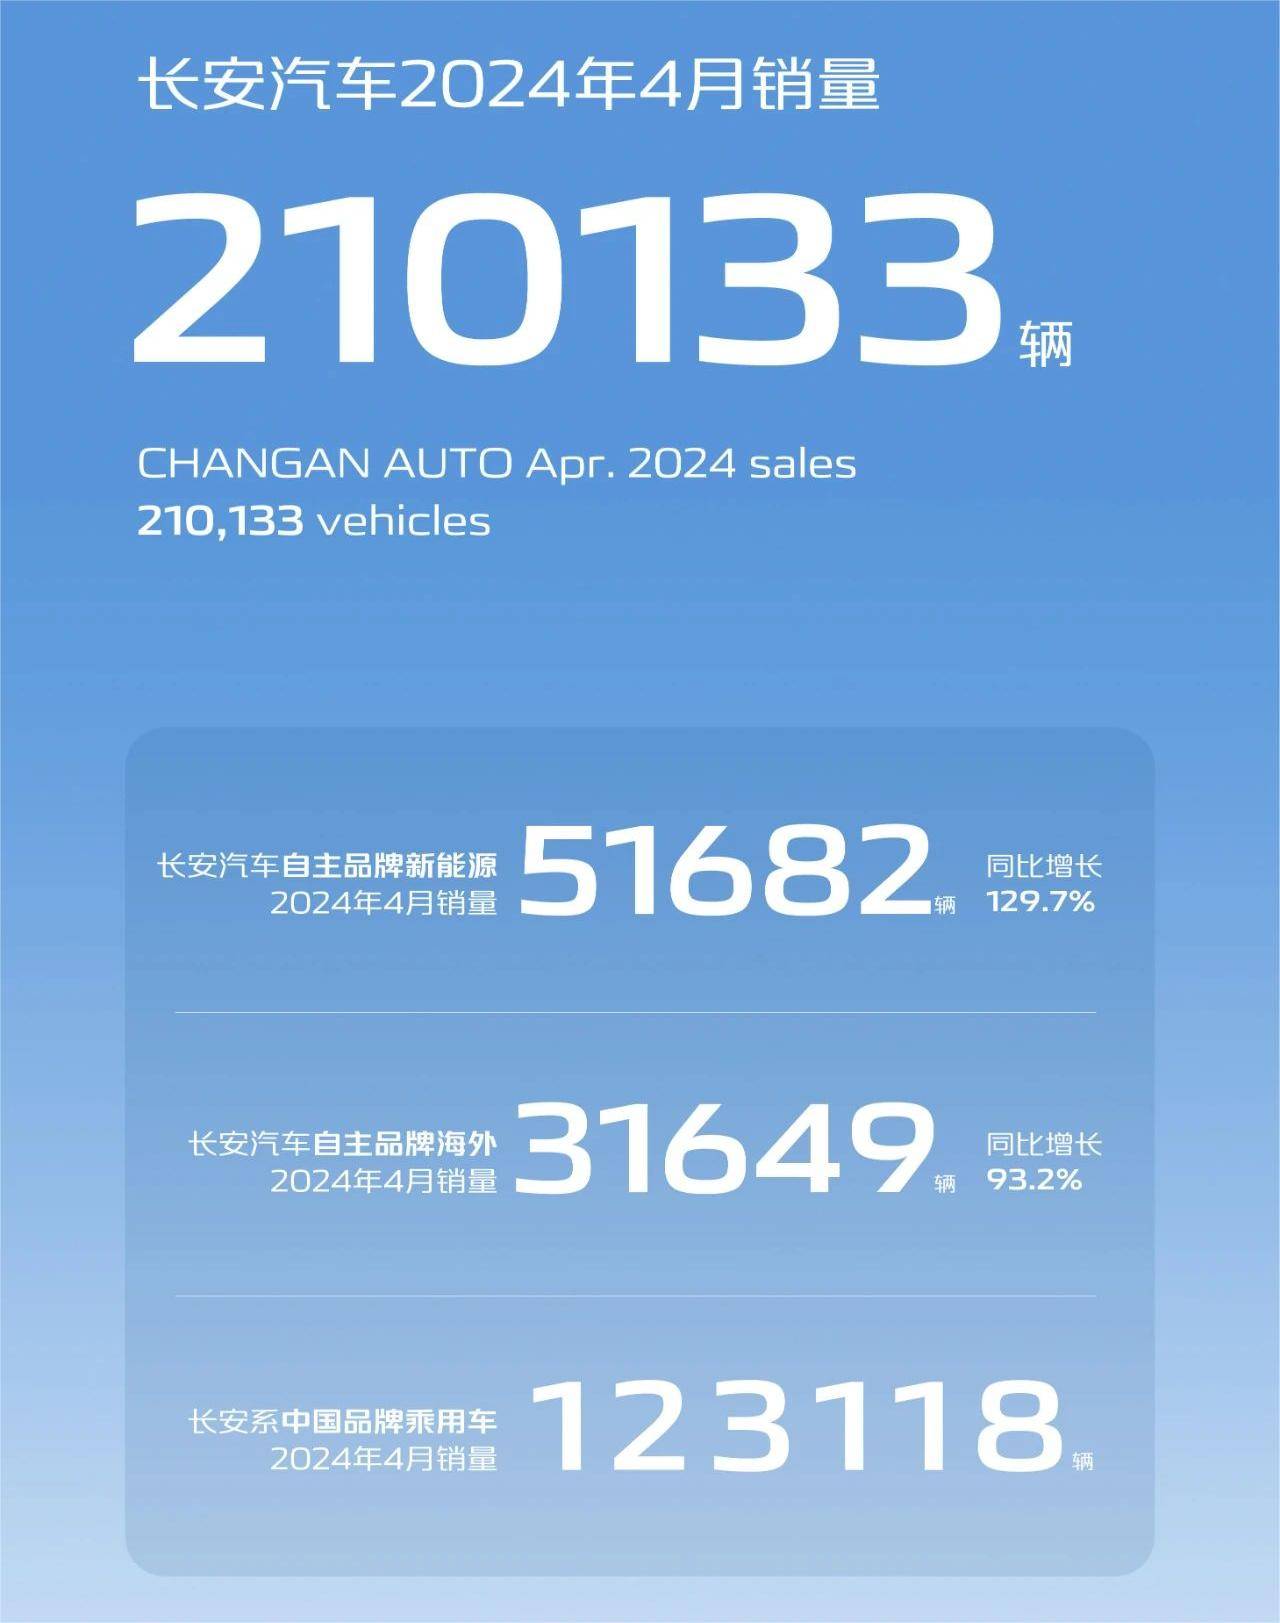 长安汽车2024年4月销量达210,133台